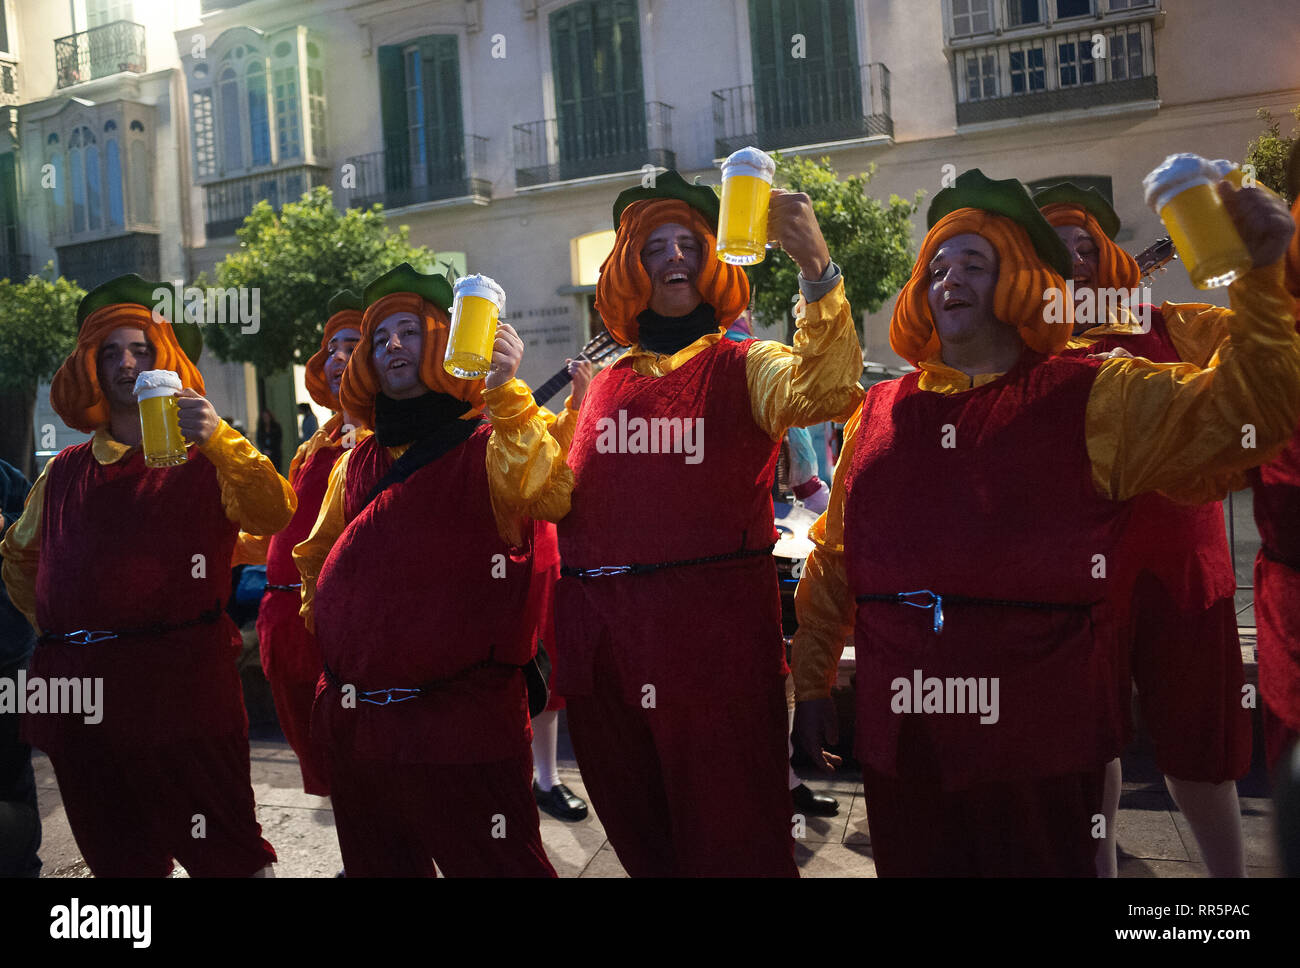 Un gruppo di uomini vestiti con il simbolo del marchio spagnolo birre  "Cruzcampo' sono visto eseguendo sulla strada durante la tradizionale  sfilata di carnevale che celebra le feste di carnevale nella capitale